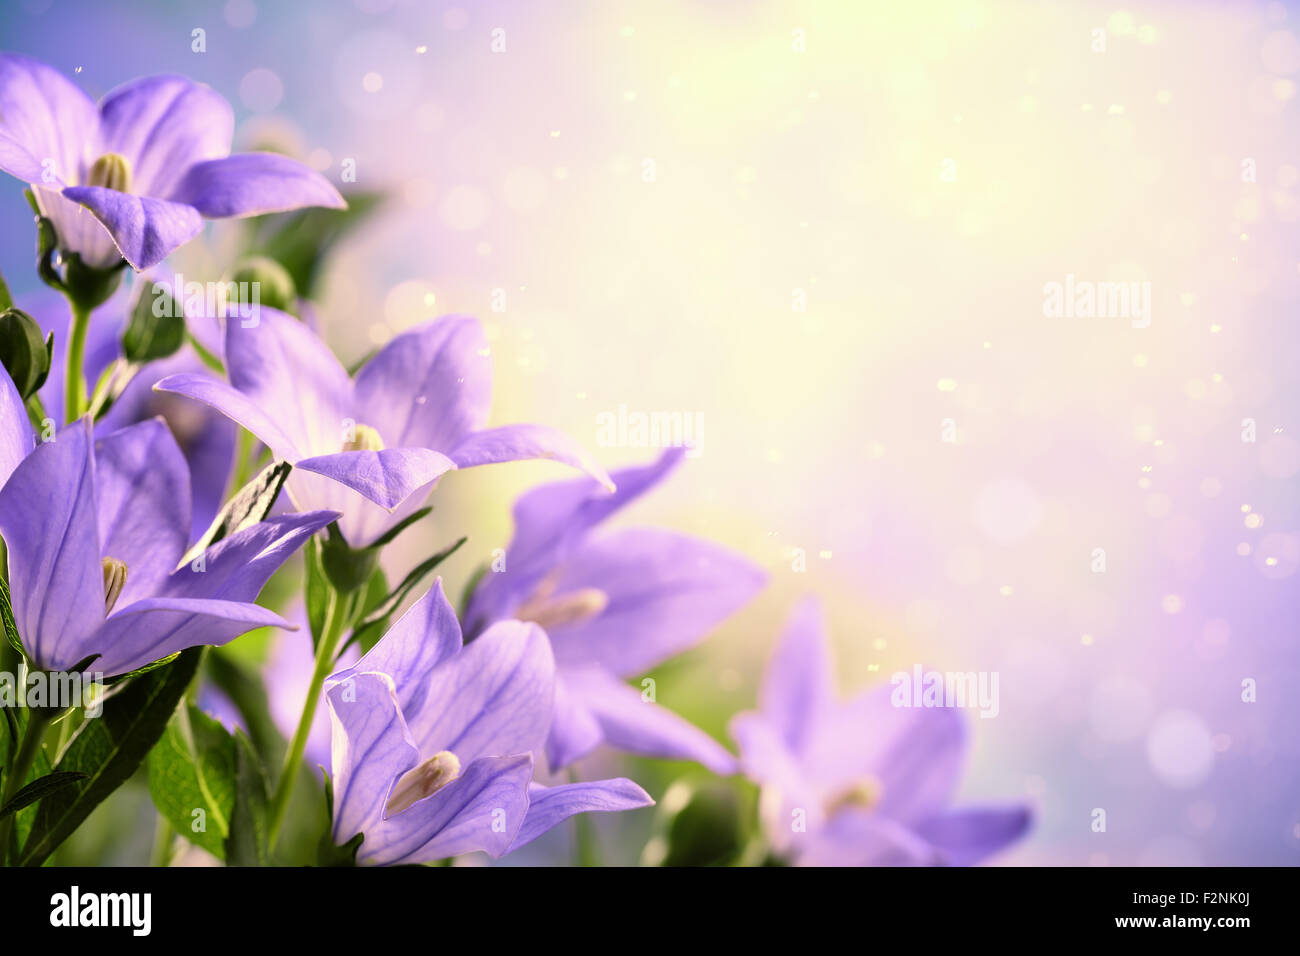 Closeup of purple flowers(Platycodon grandiflorus). Stock Photo